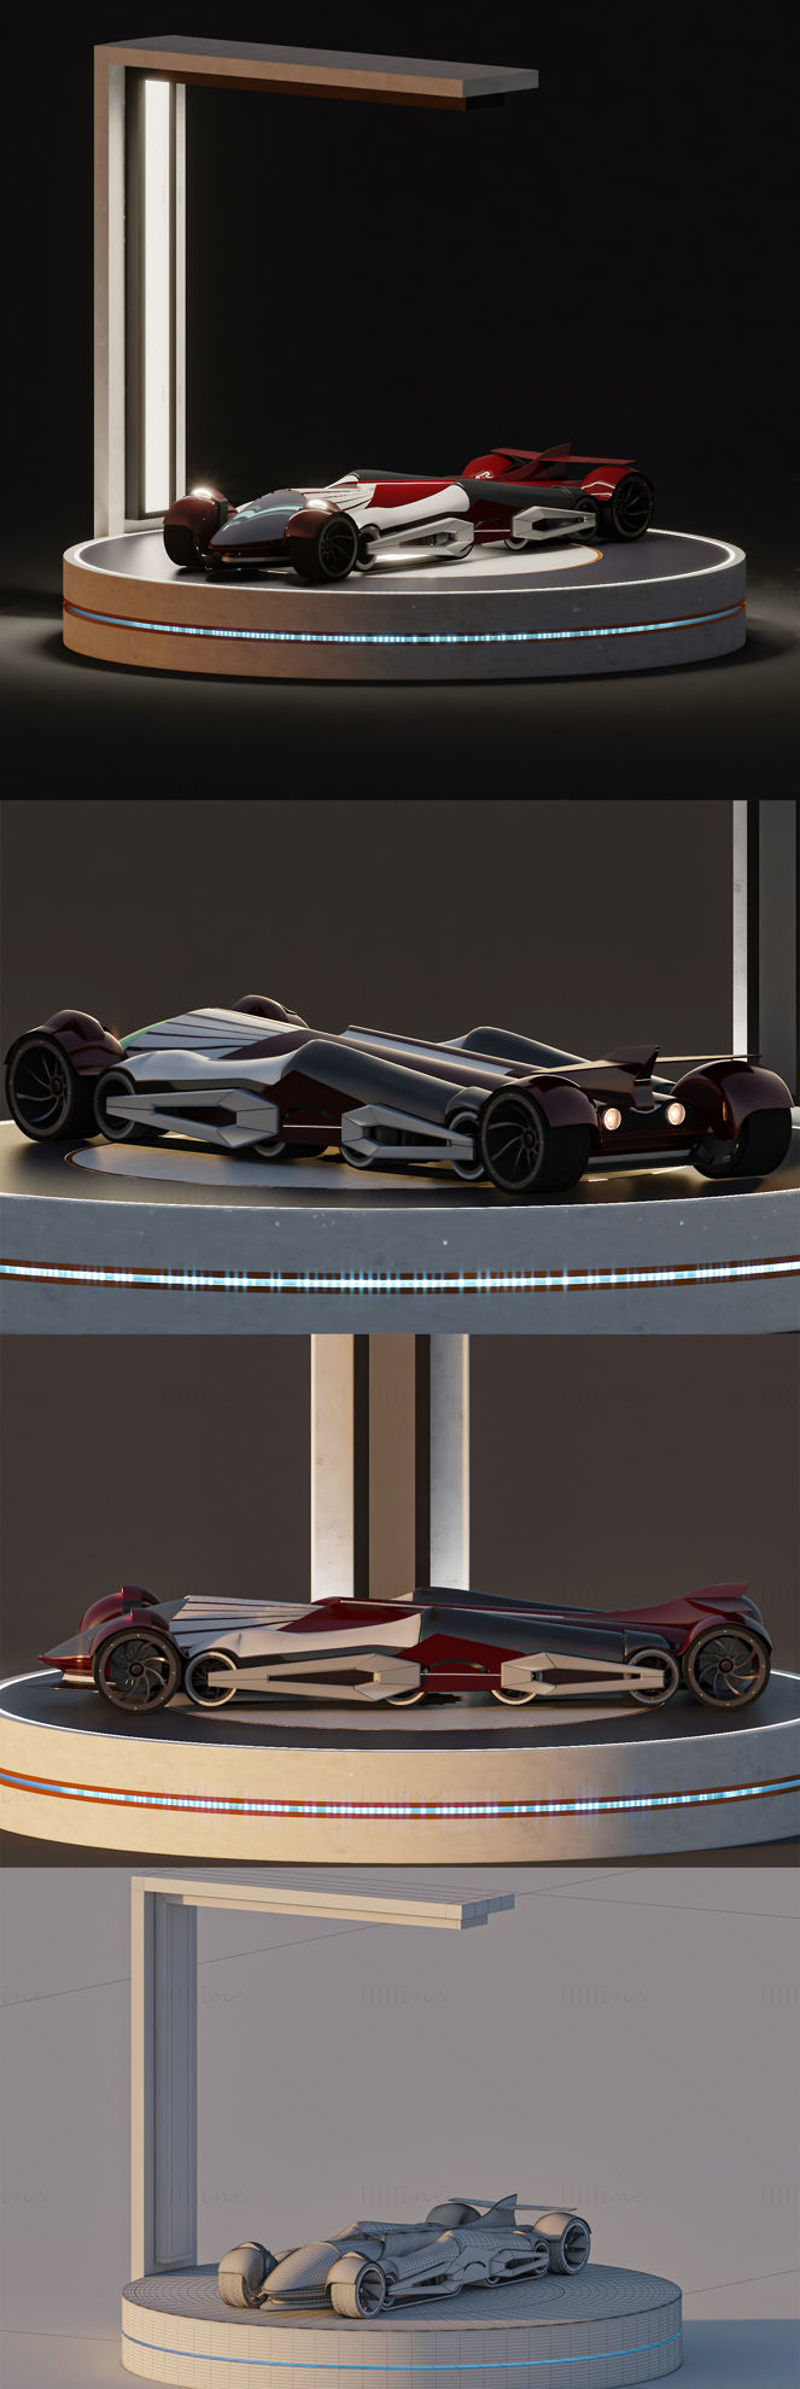 Koncept sportovního vozu + stánek s 3D modelem scény